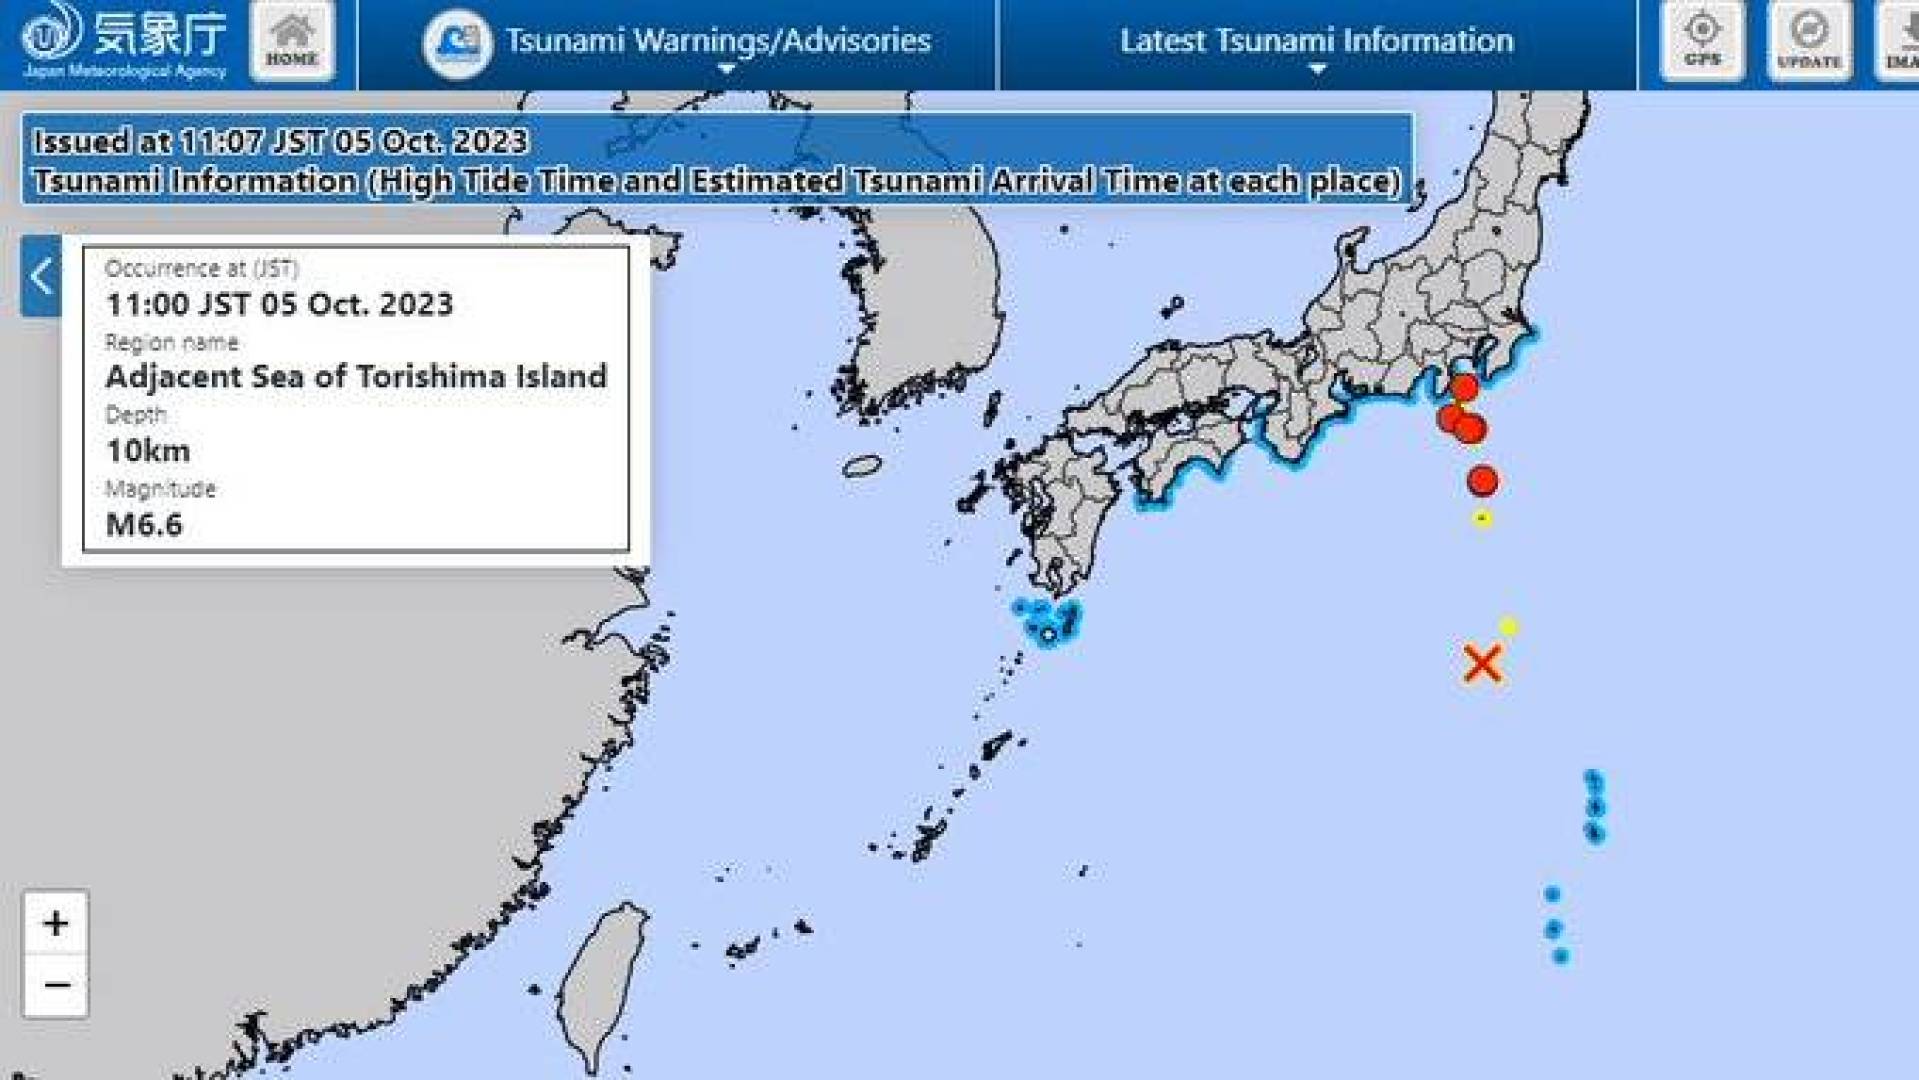 زلزال بقوة 6.6 درجات يضرب الجزر اليابانية وتتحذير من حدوث موجة تسونامي